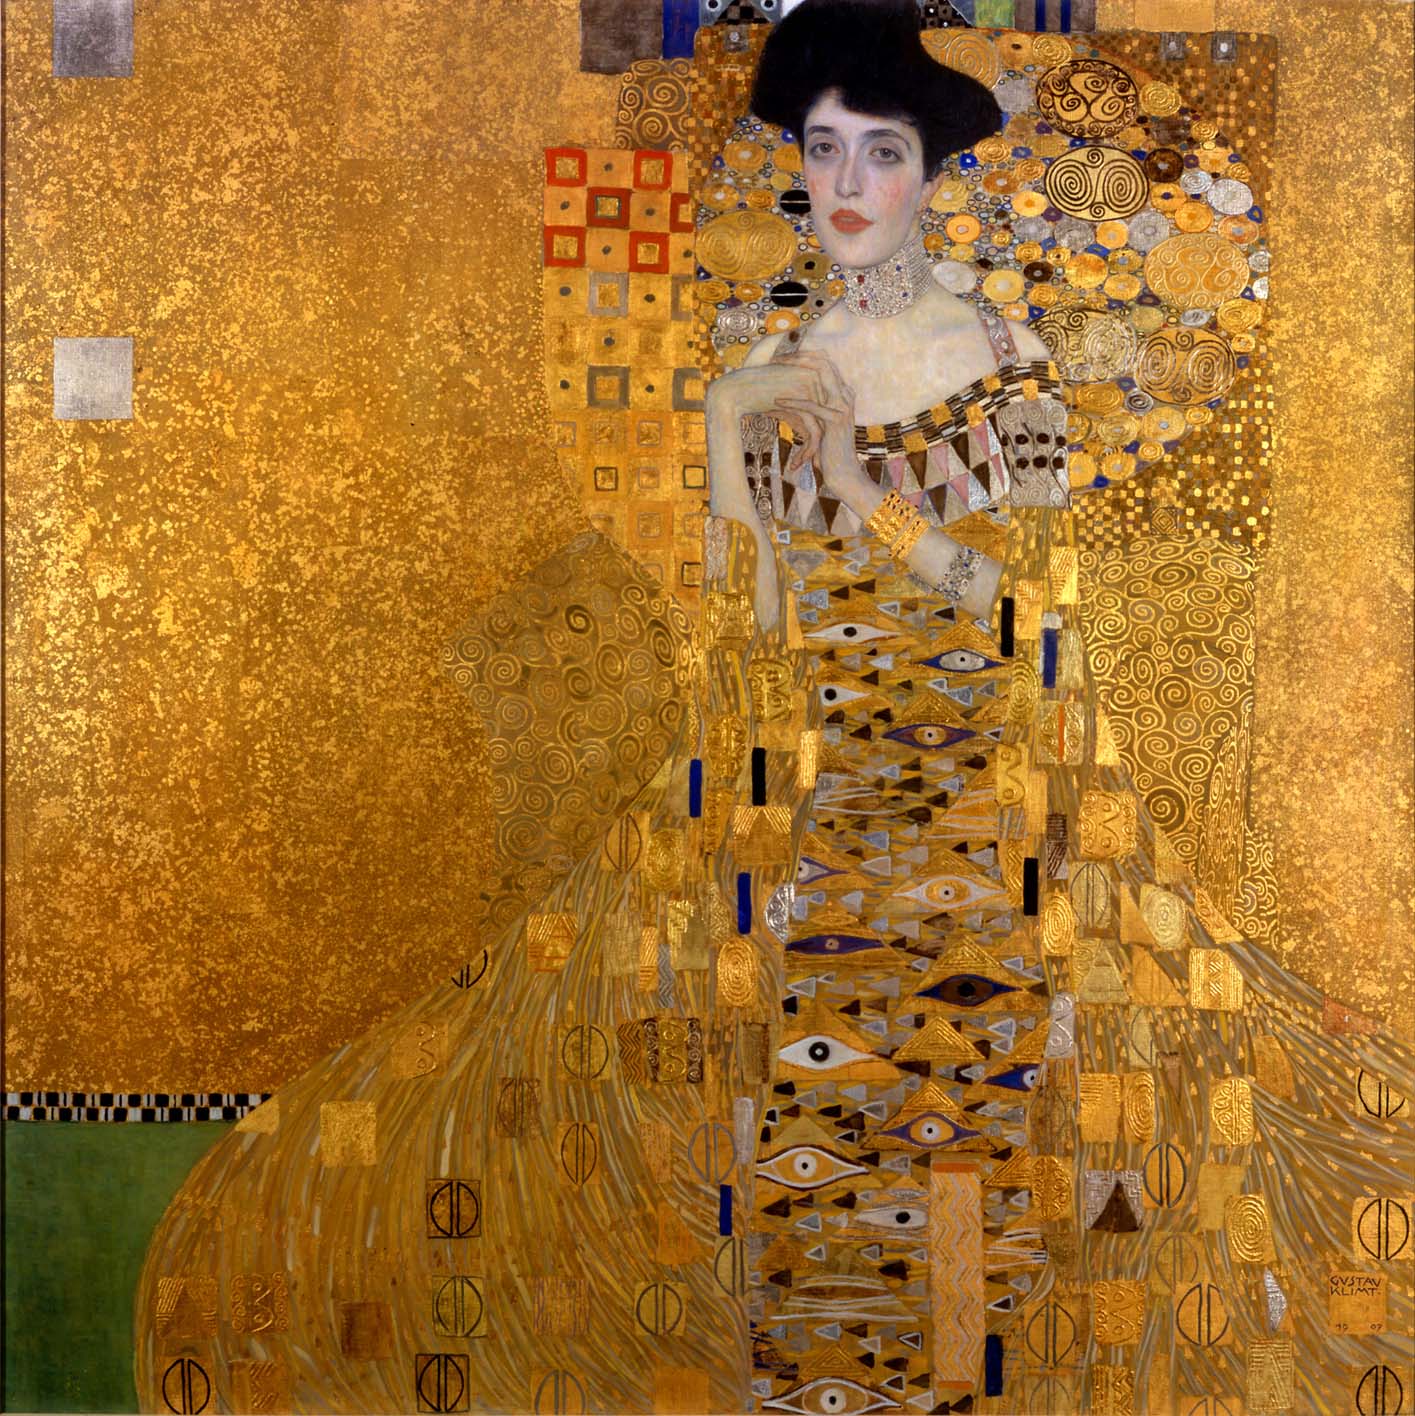 The original Portrait of Adele Bloch-Bauer I by Gustav Klimt